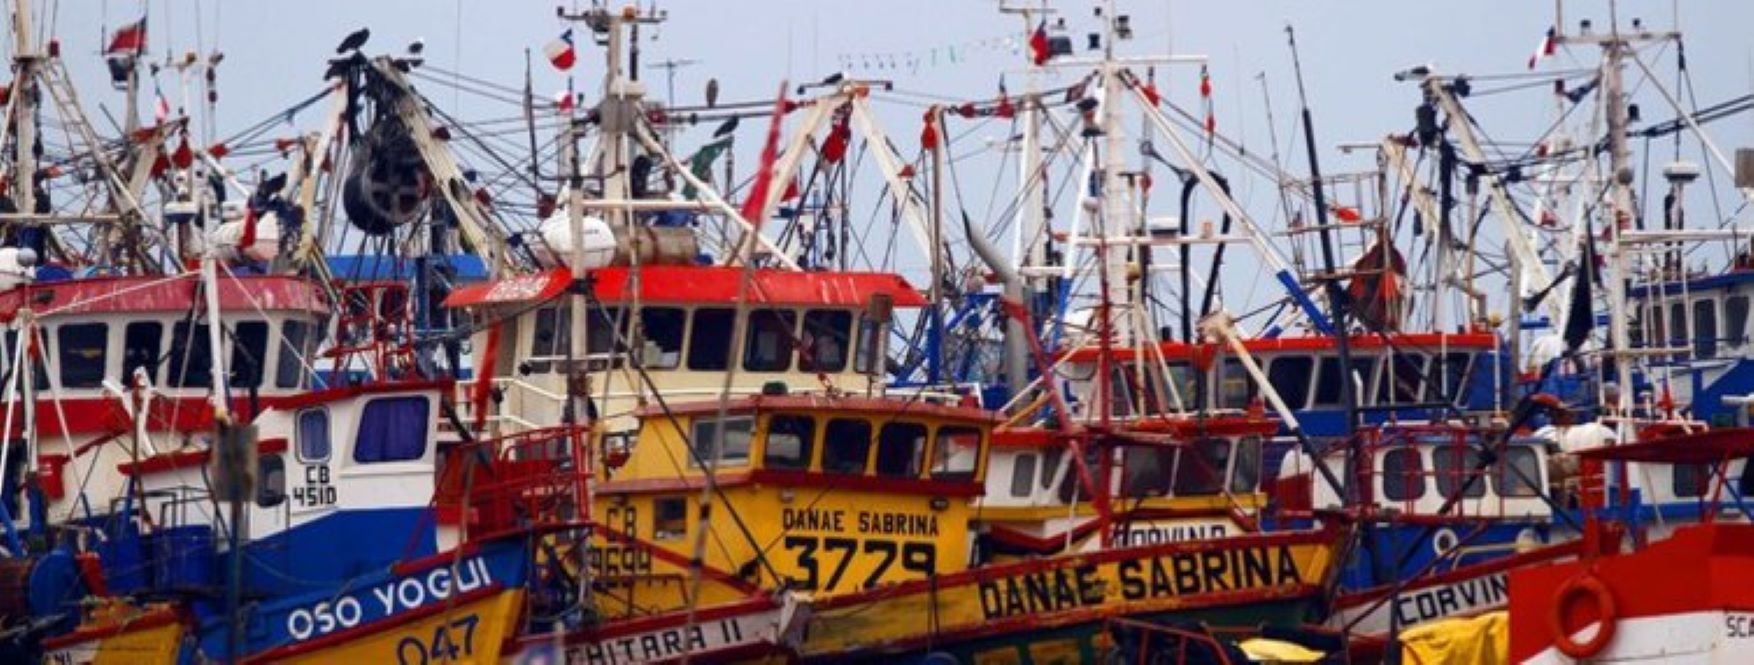 28 pesquerías en Chile se encuentran en estado de agotamiento, según informe de la Subsecretaría de Pesca y Acuicultura